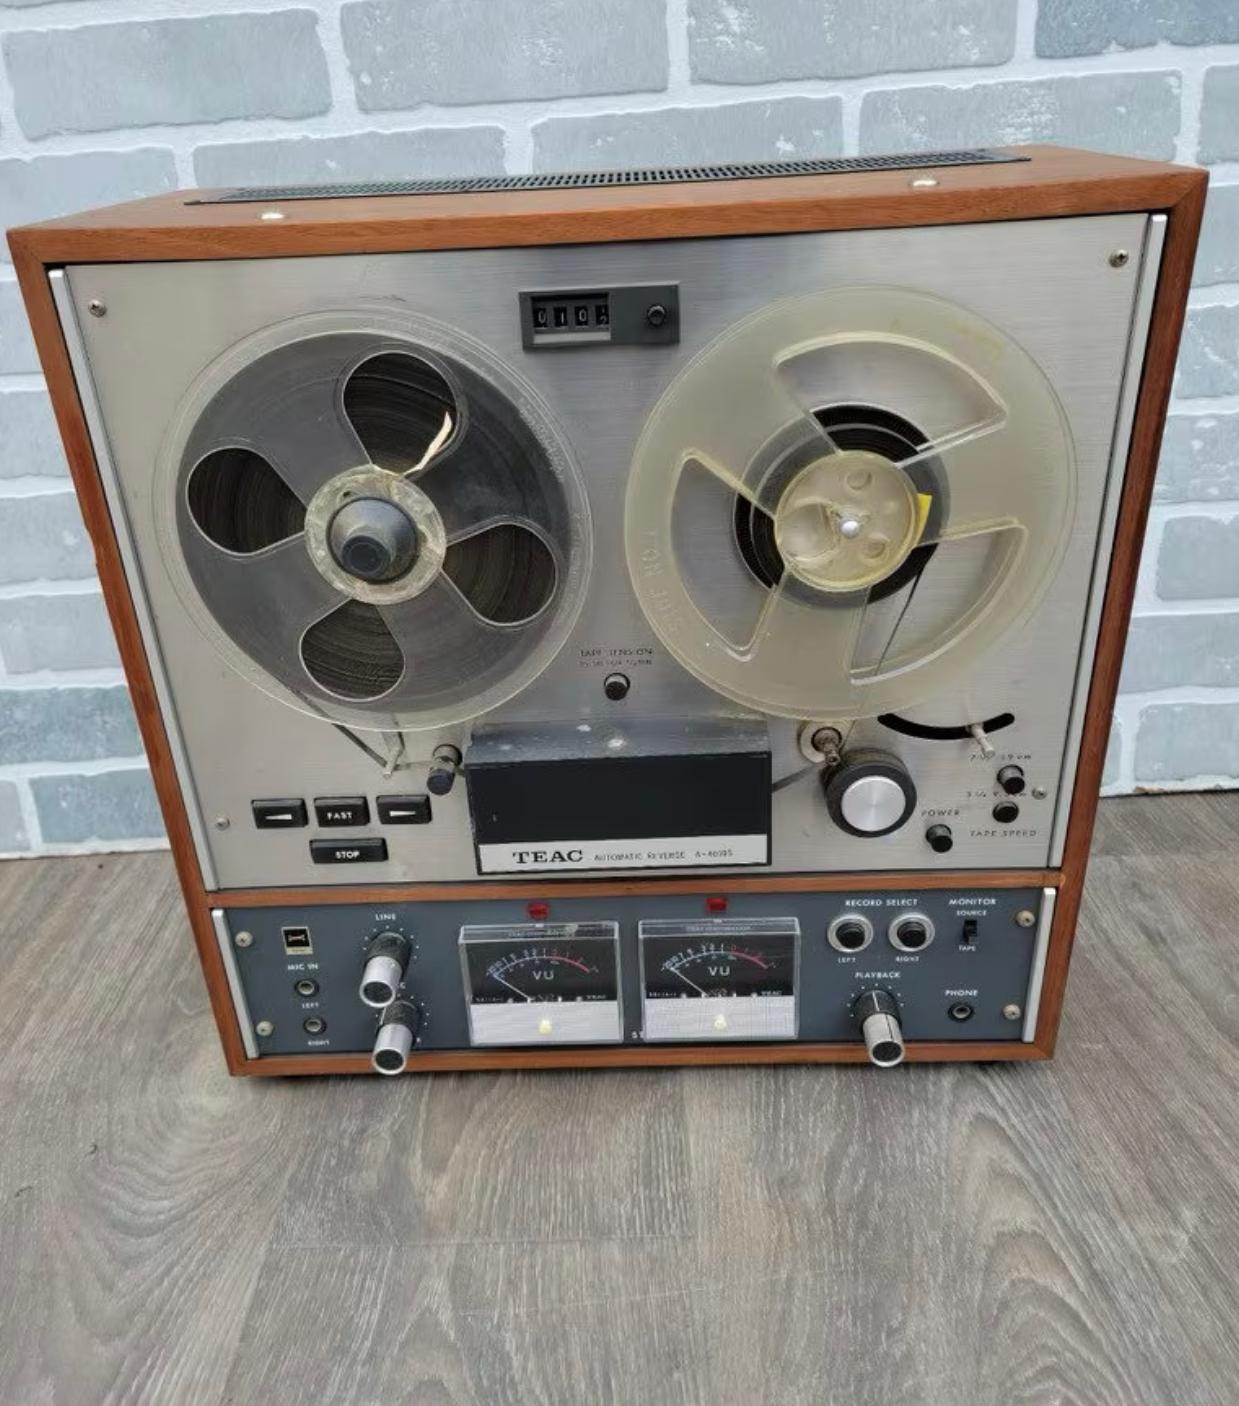 Vieux rétroviseur TEAC Tascam Reel To Reel Tape, 1966

Cette bande magnétique ancienne date des années 1960. Il a été annoncé comme 